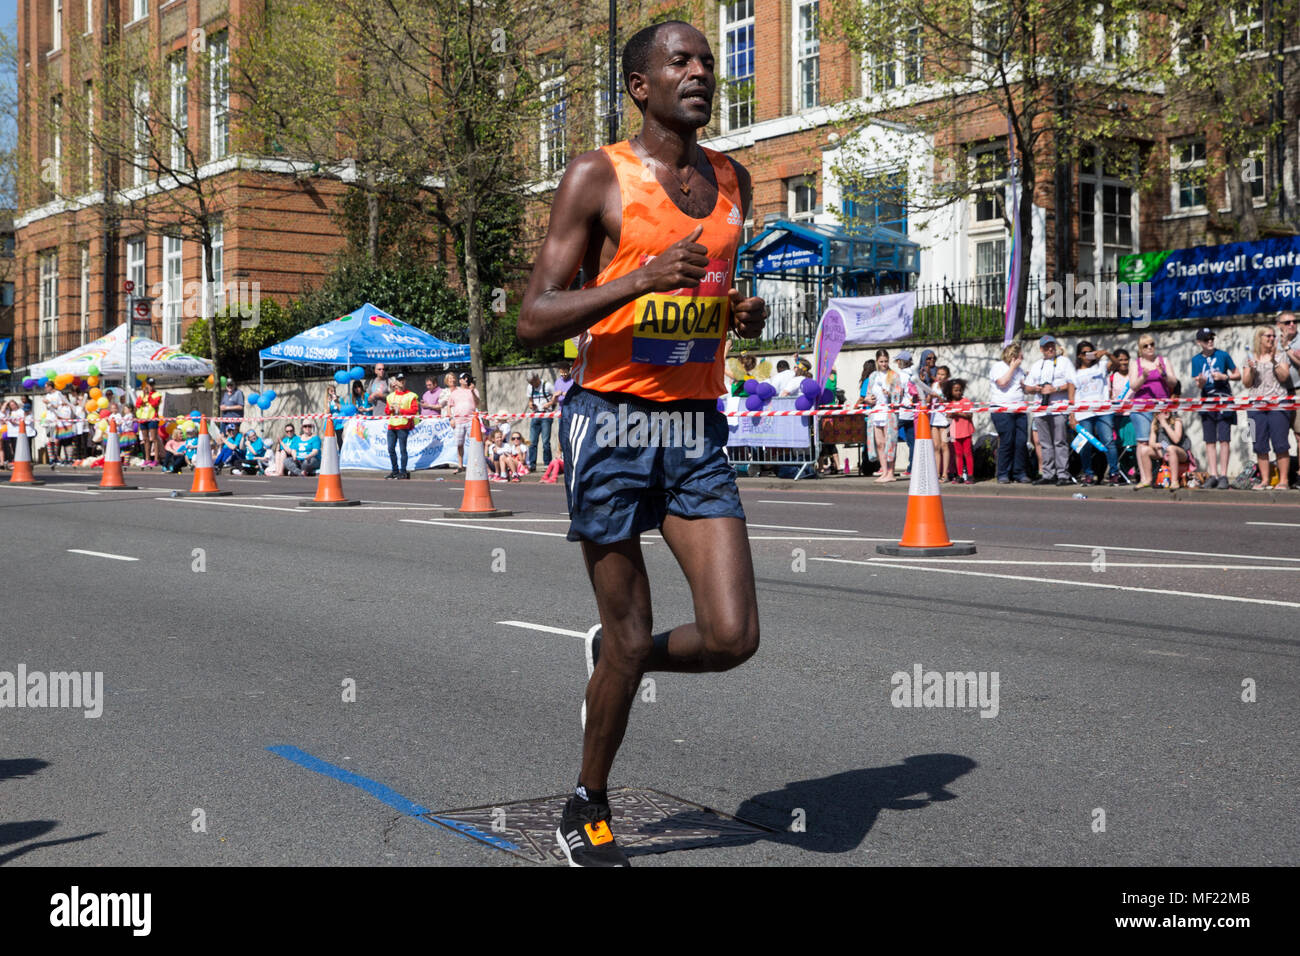 Londra, Regno Unito. Il 22 aprile, 2018. Guye Adola dell Etiopia compete nell'Elite Uomo evento al 2018 denaro Virgin London Marathon. La trentottesima edizione della gara è stato il più caldo il record con una temperatura di 24.1C registrati in St James Park. Foto Stock